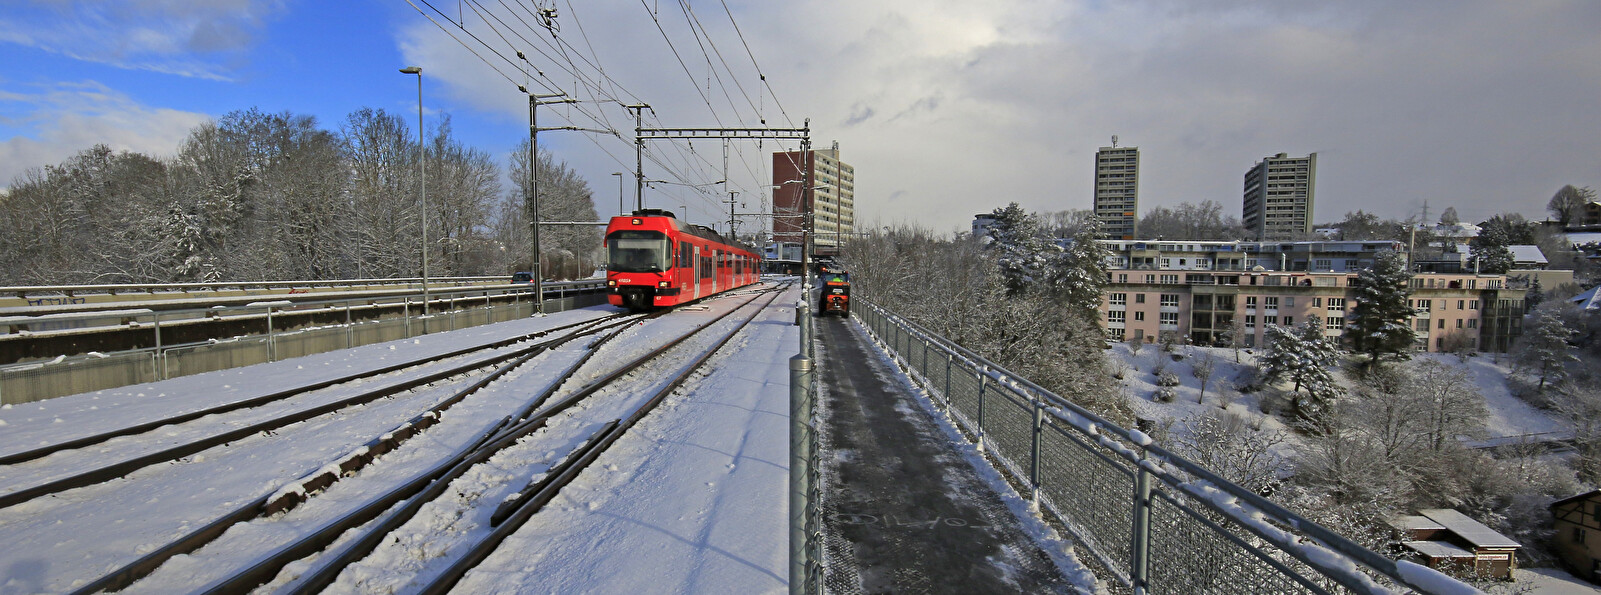 Tiefenaubrücke mit RBS-Zug.